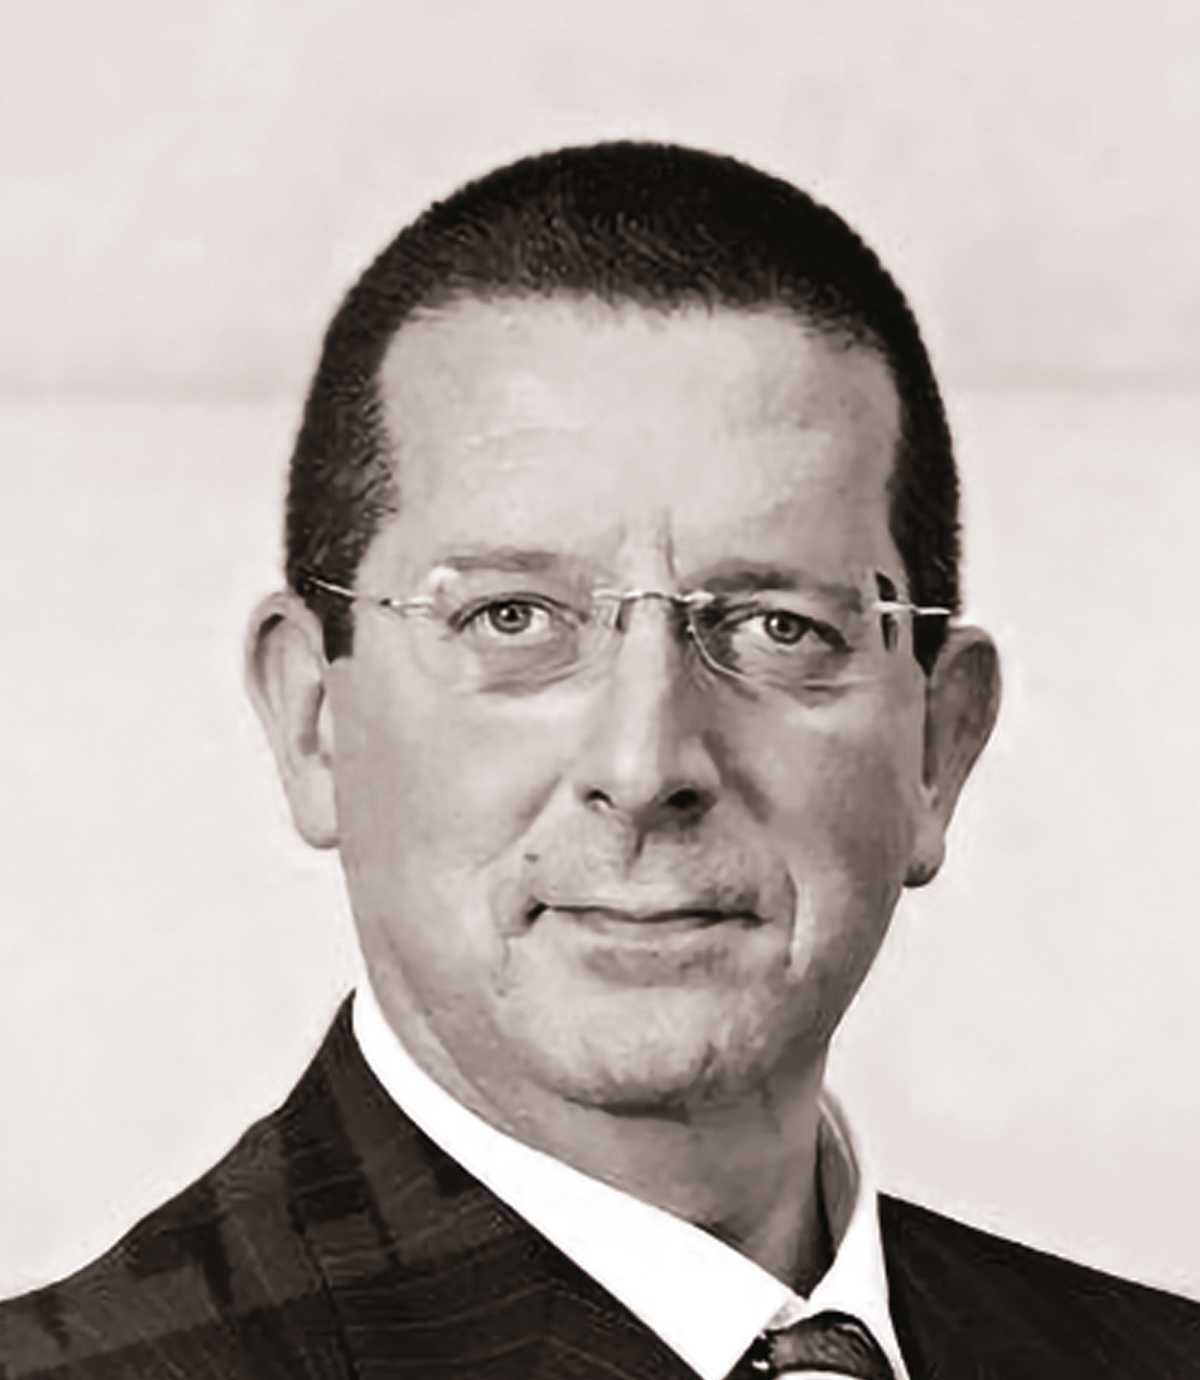 Альберто Риццо, адвокат в Кассационном суде, советник Банка кооперативного кредита Кераско